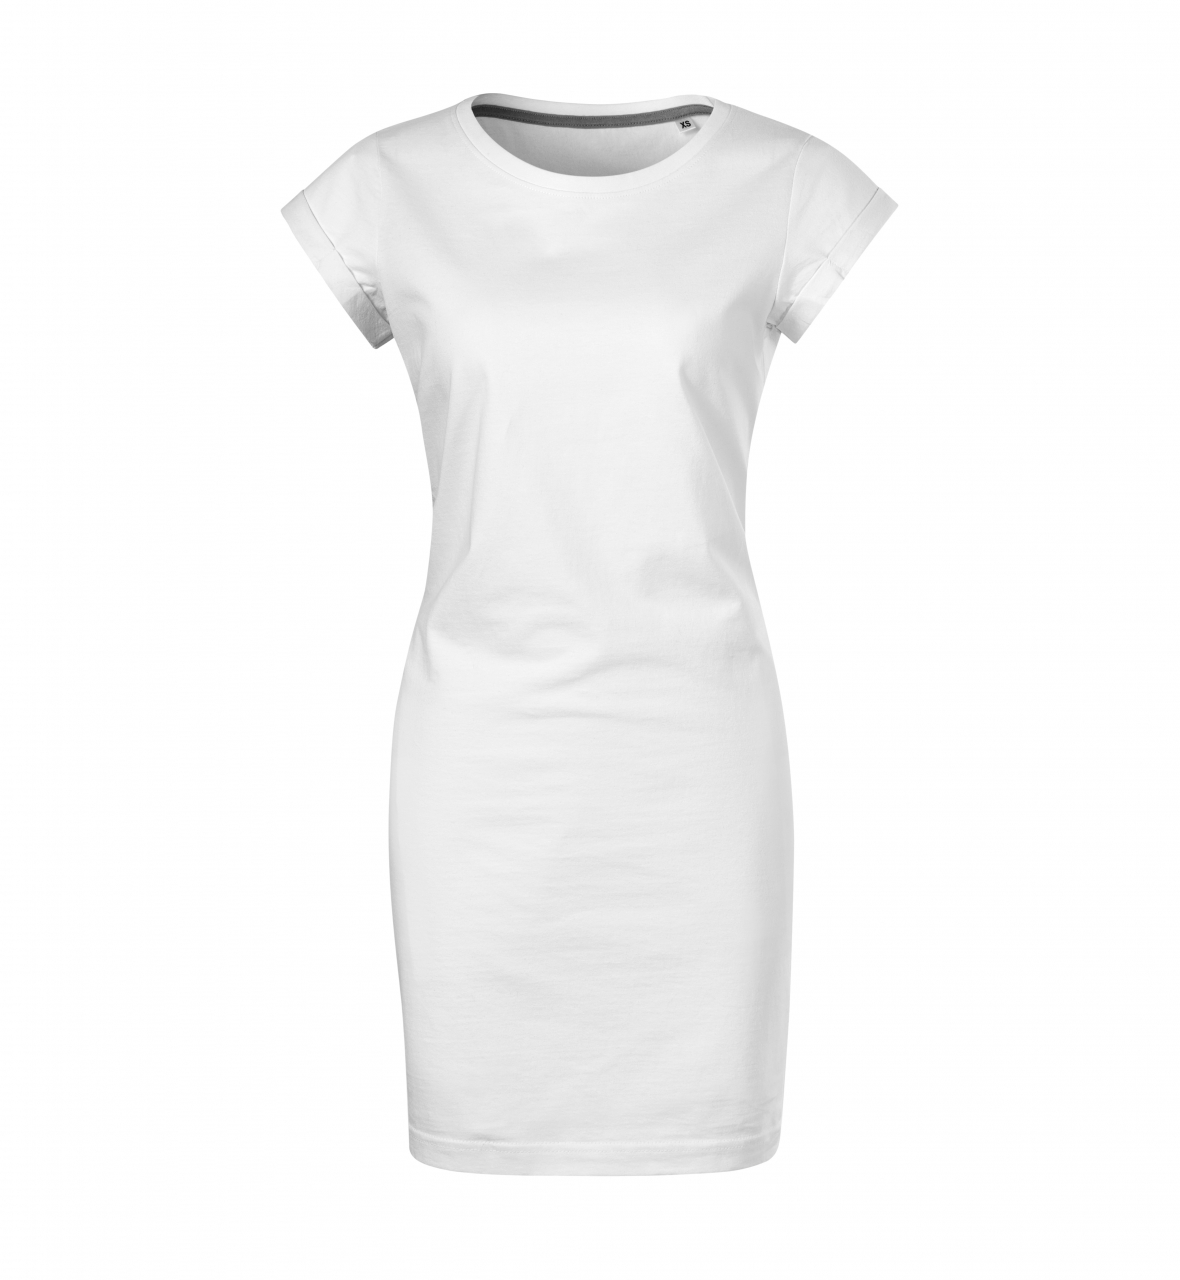 Šaty dámské Malfini Freedom - bílé, S